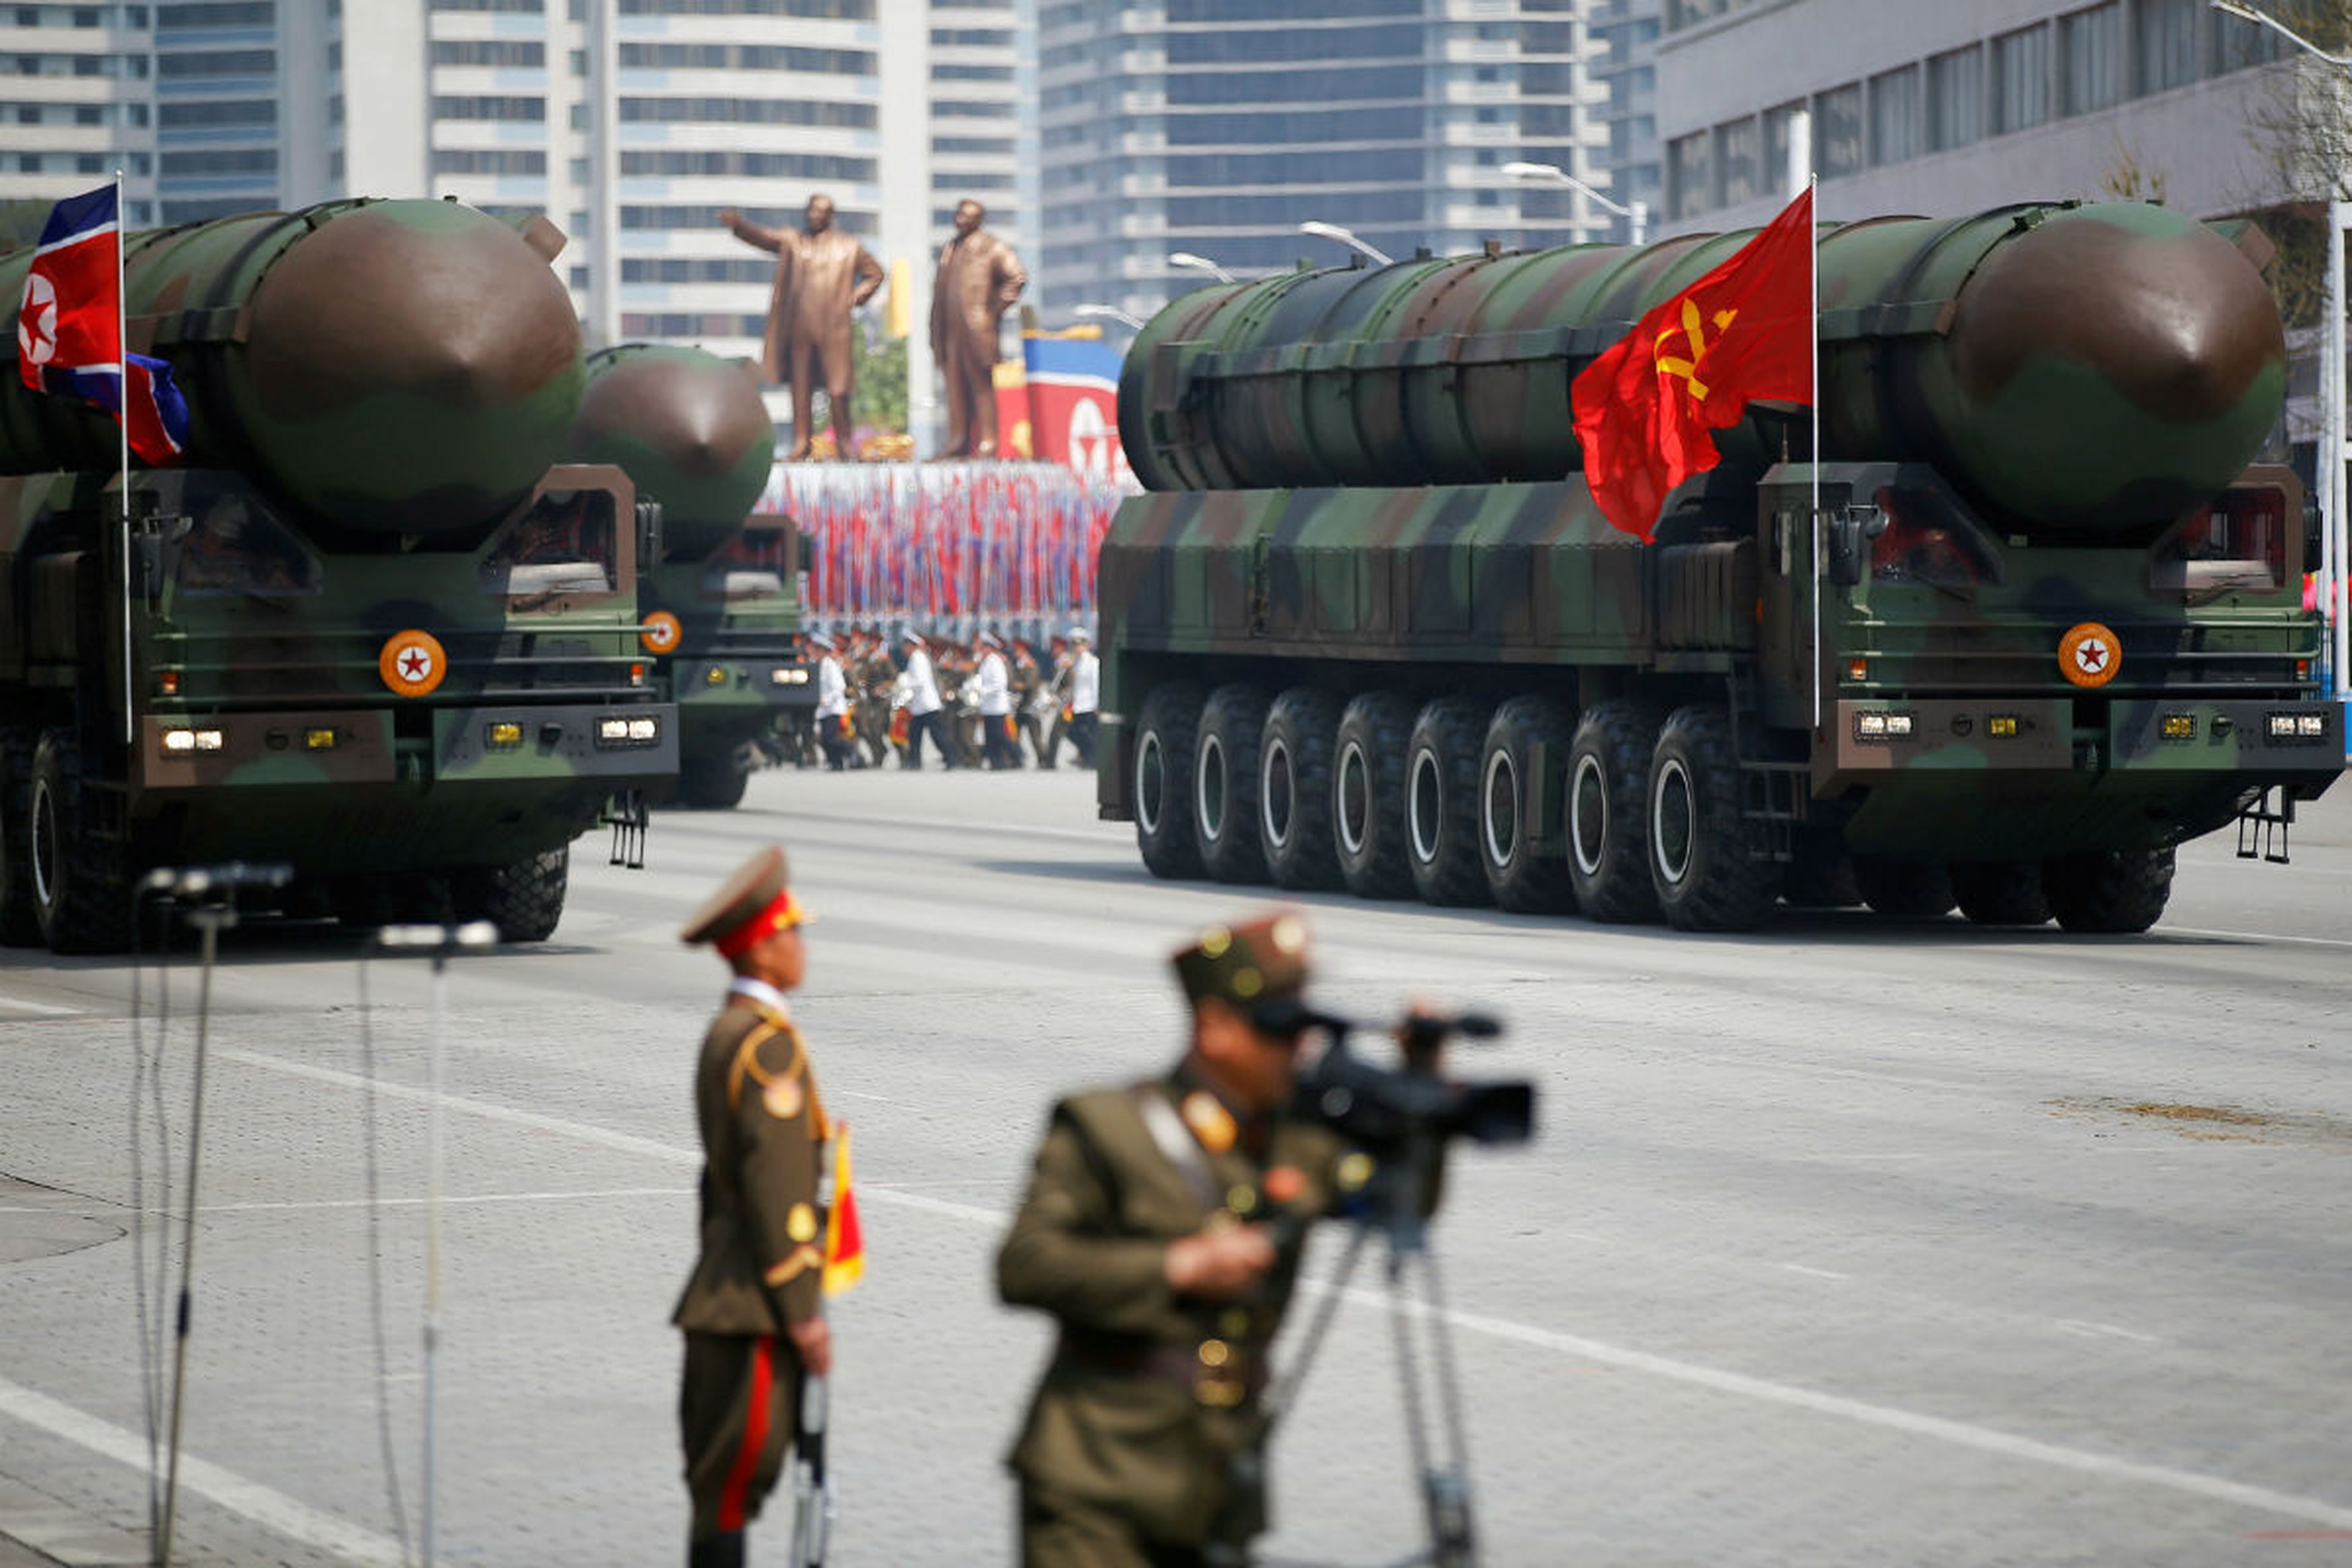 Una echibición militar en Corea del Norte.